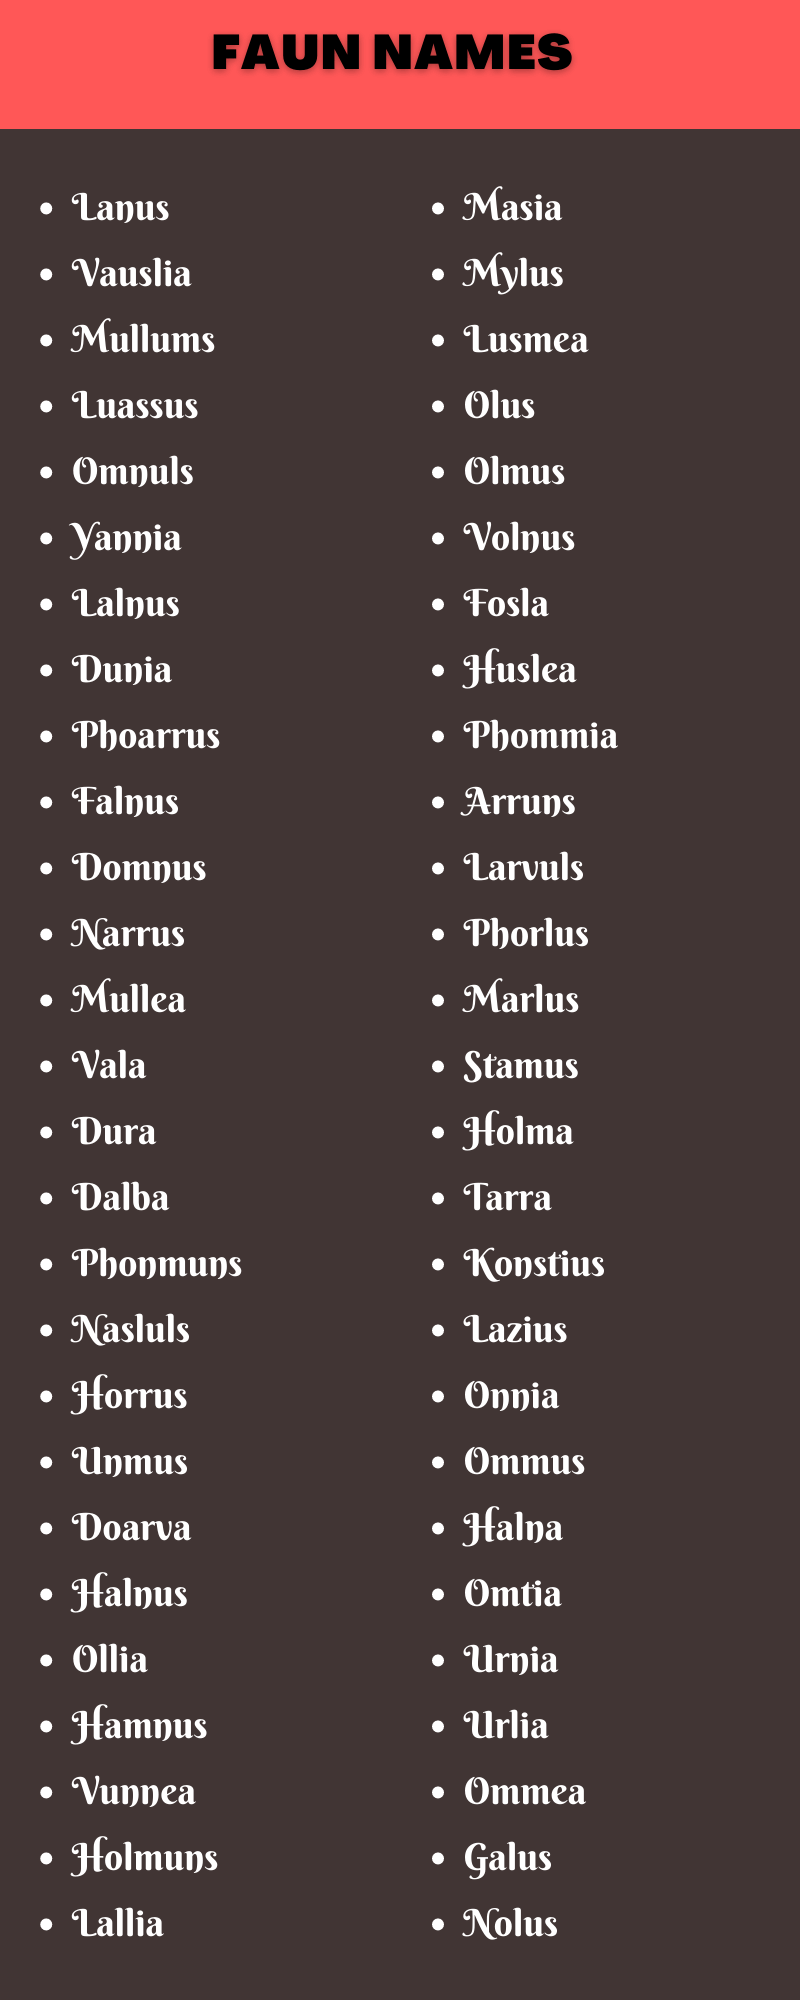 Faun Names